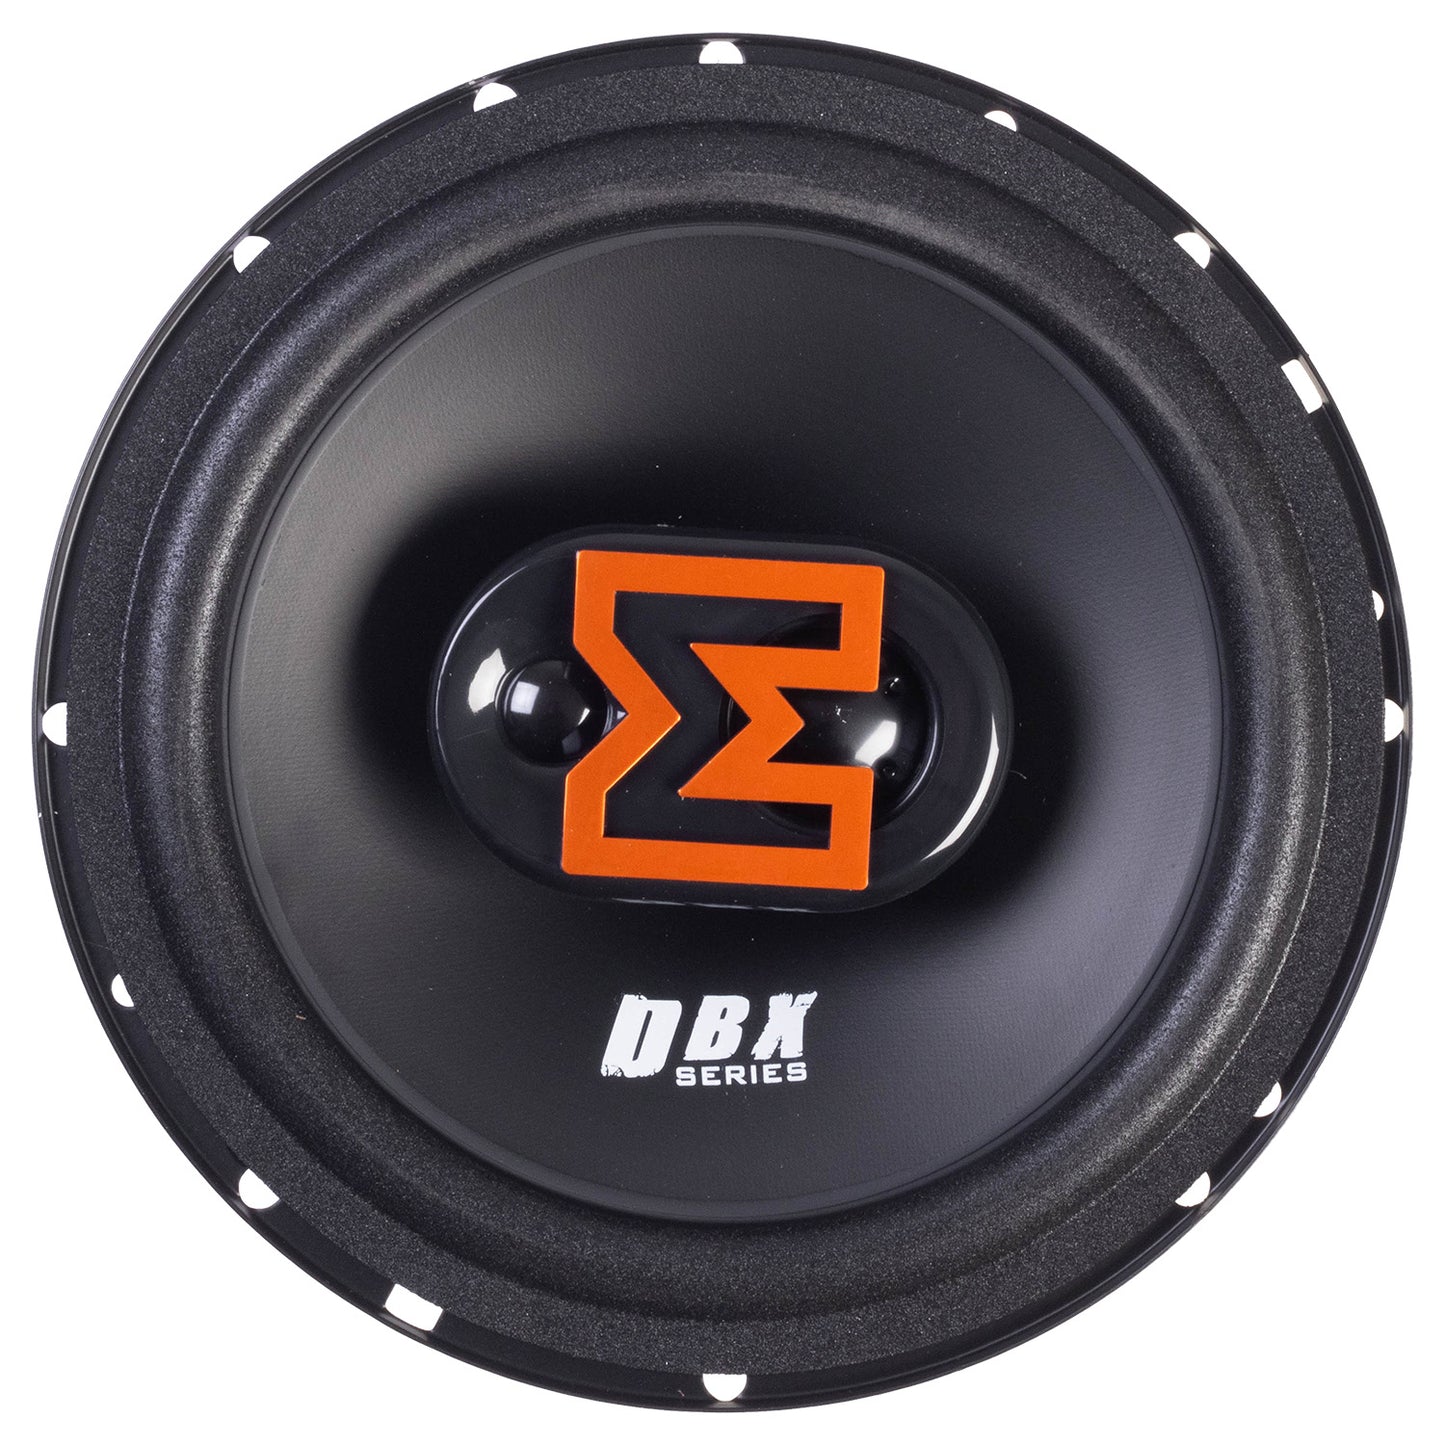 EDBX6-E1 | EDGE DBX Series 6.5 inch 180 watts Coaxial Speakers - Pair